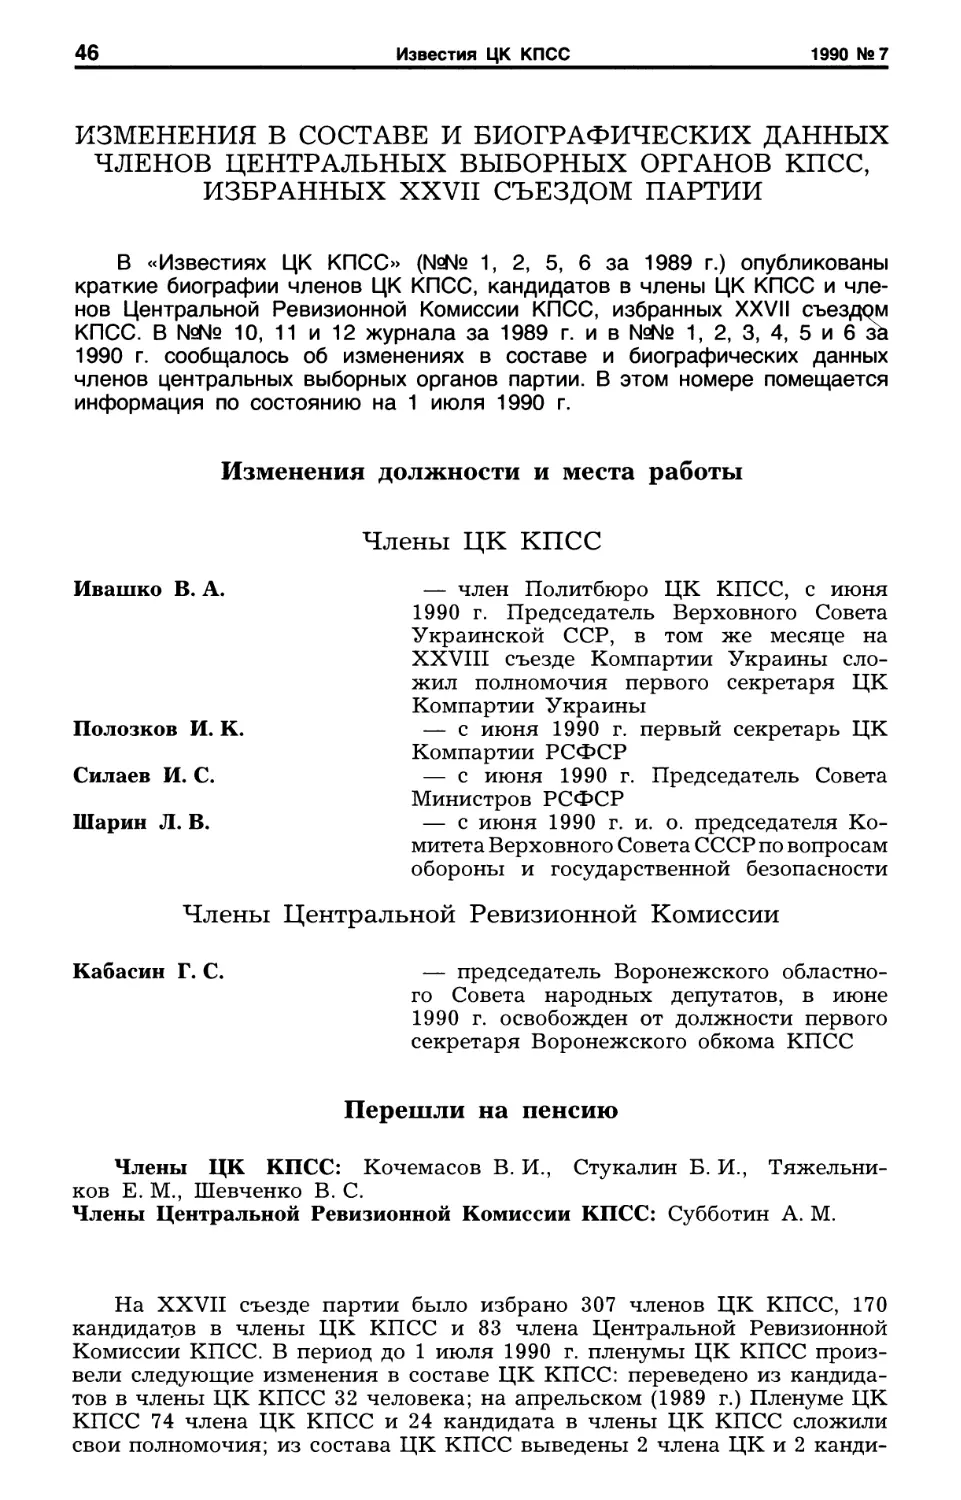 Изменениея в составе и биографических даннных членов центральных выборных органов КПСС